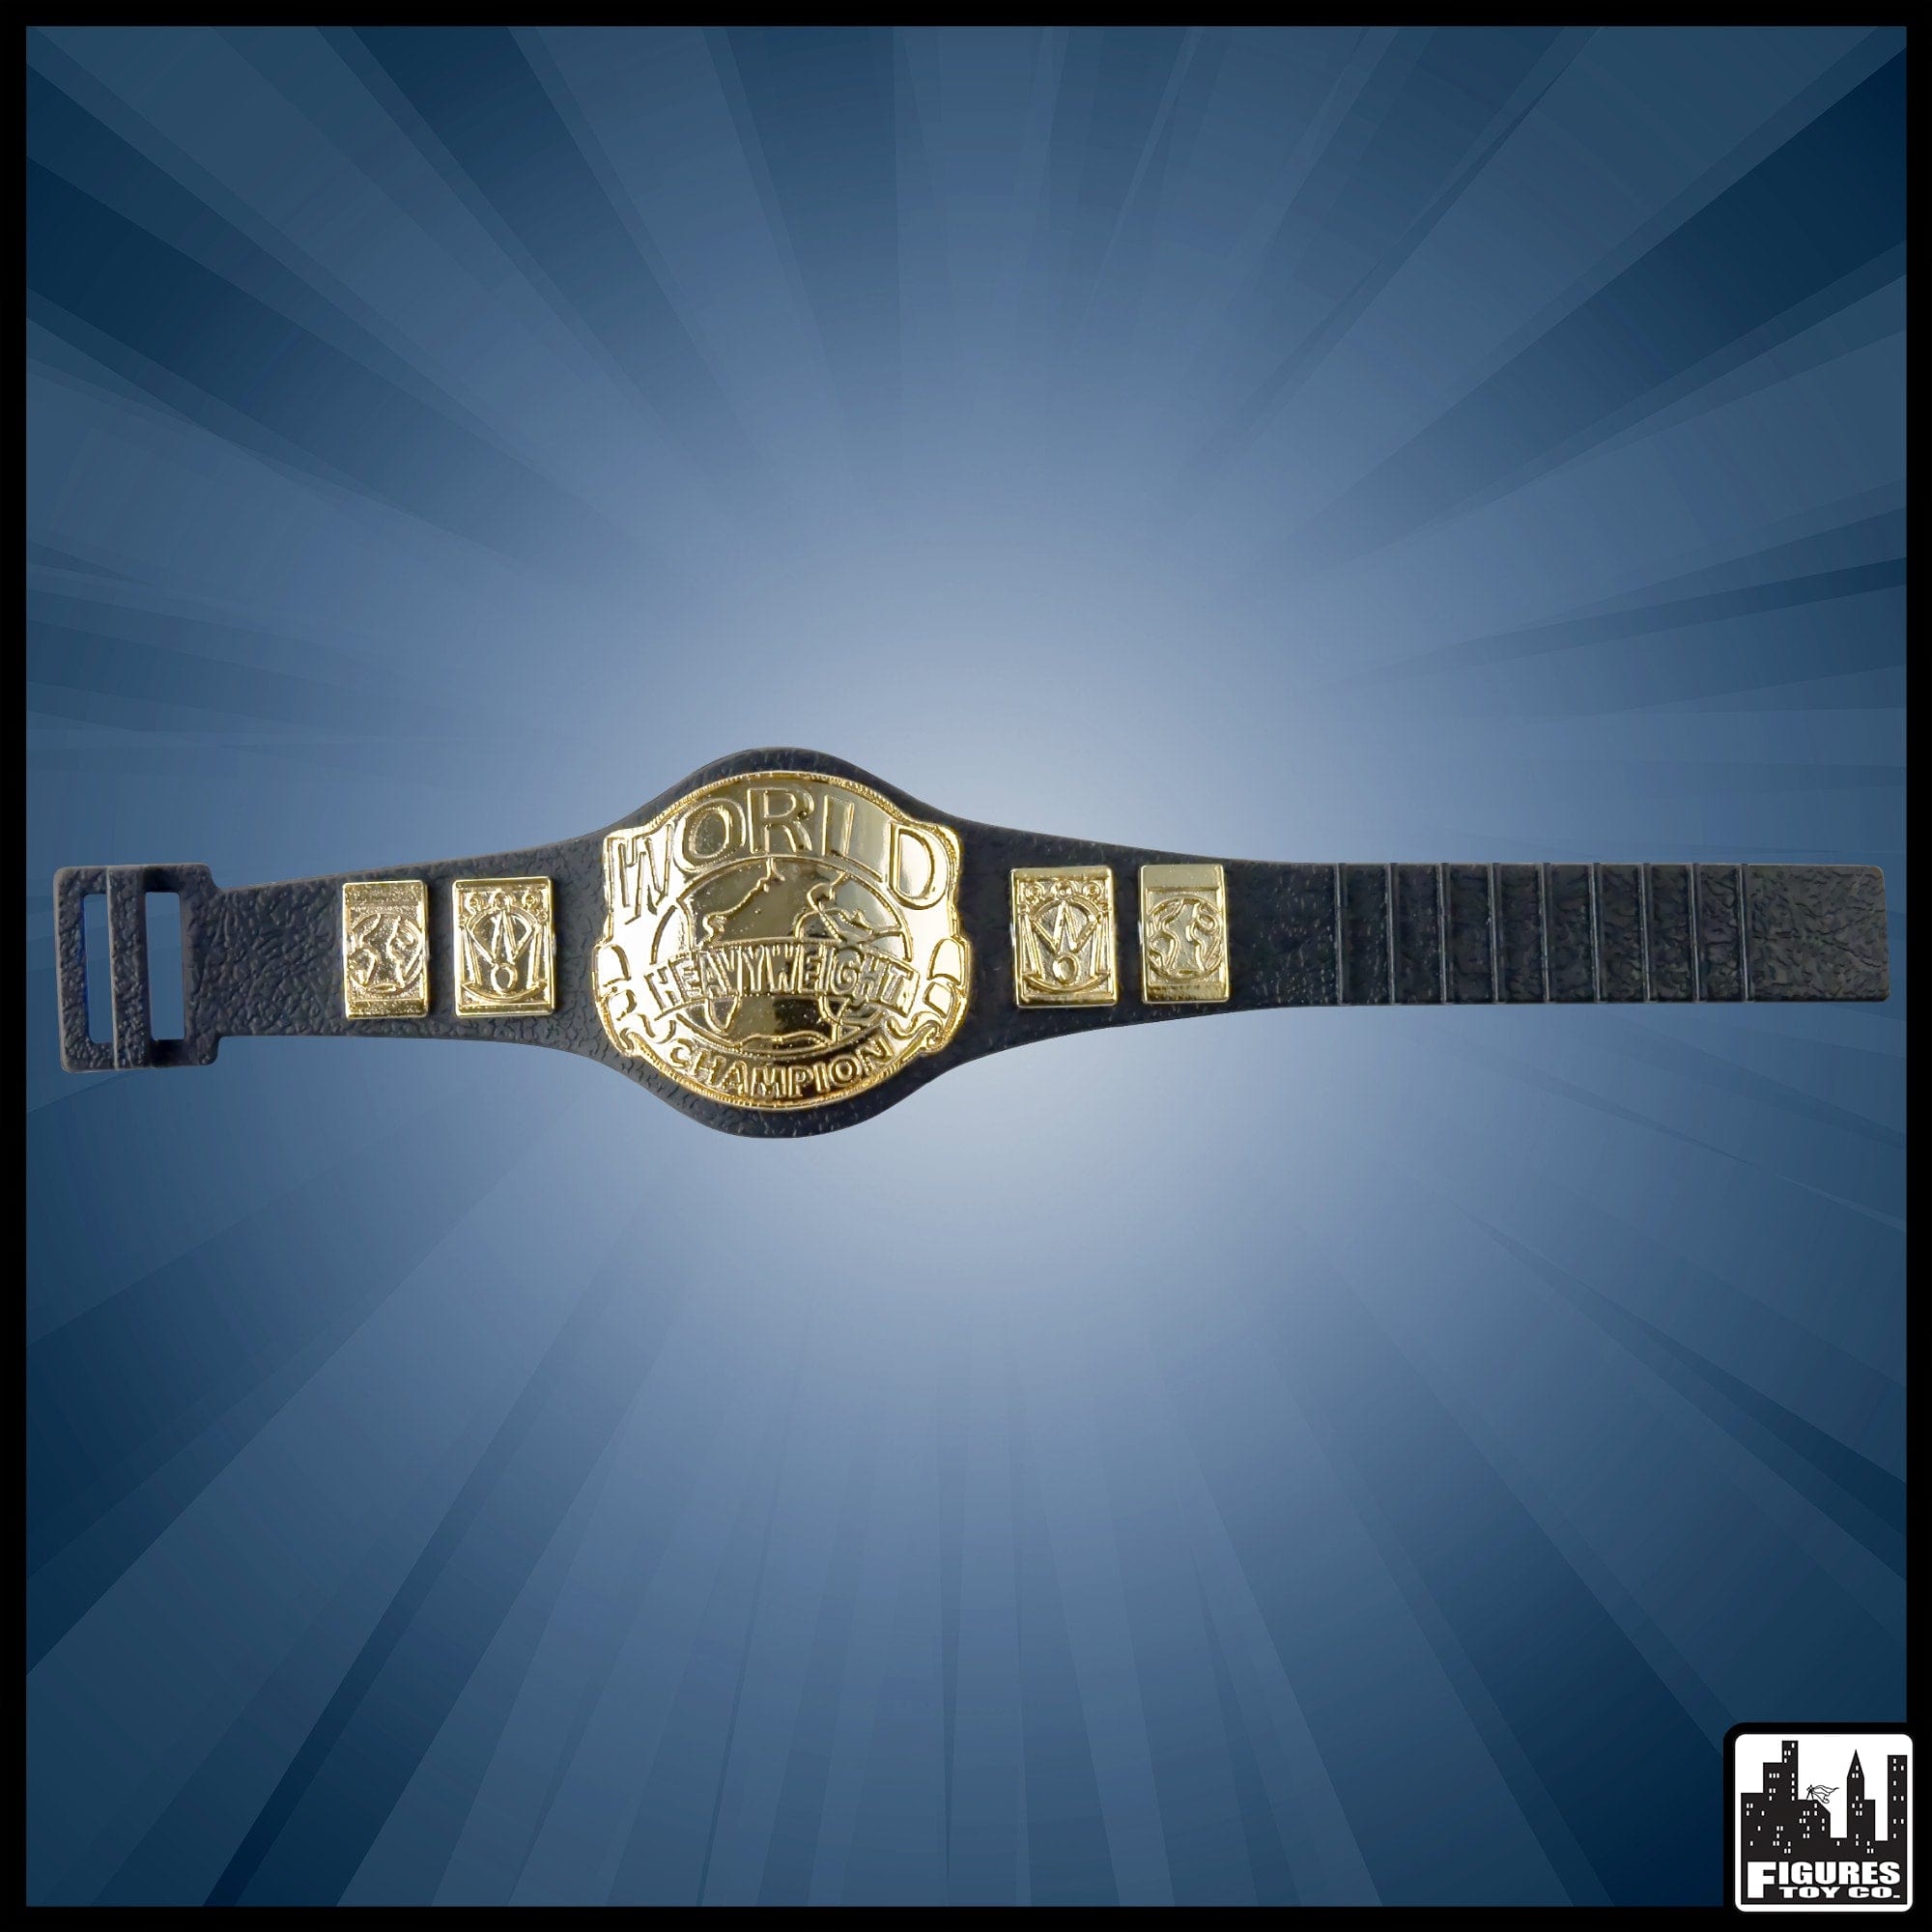 wwe world heavyweight championship belt toy